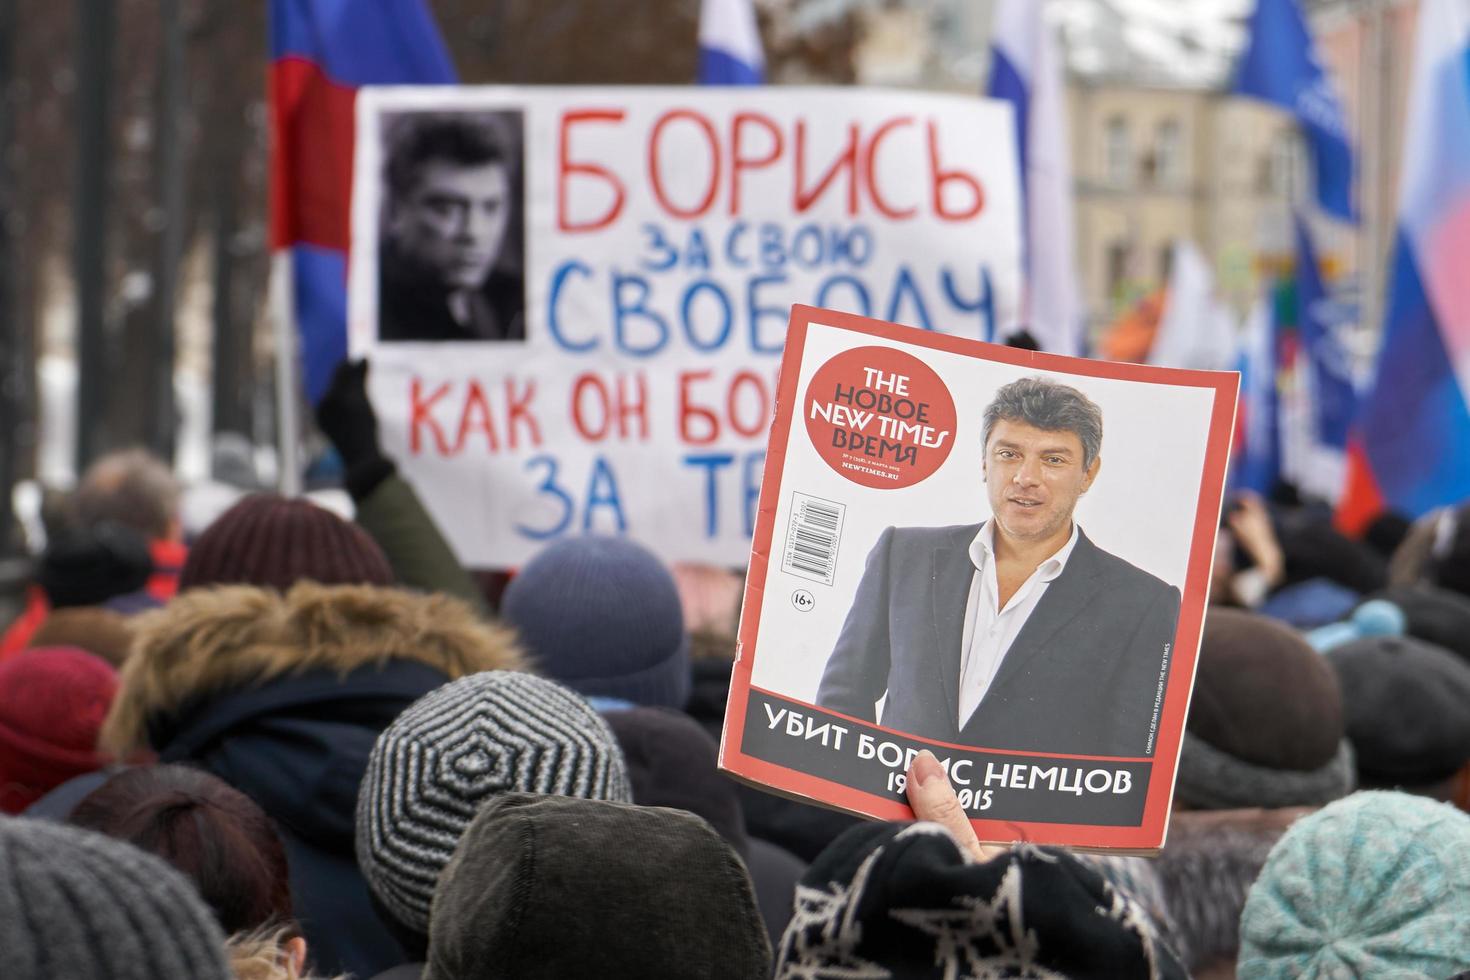 moscou, rússia - 24 de fevereiro de 2019 pessoas carregando bandeiras e banners russos na marcha da memória nemtsov em moscou foto